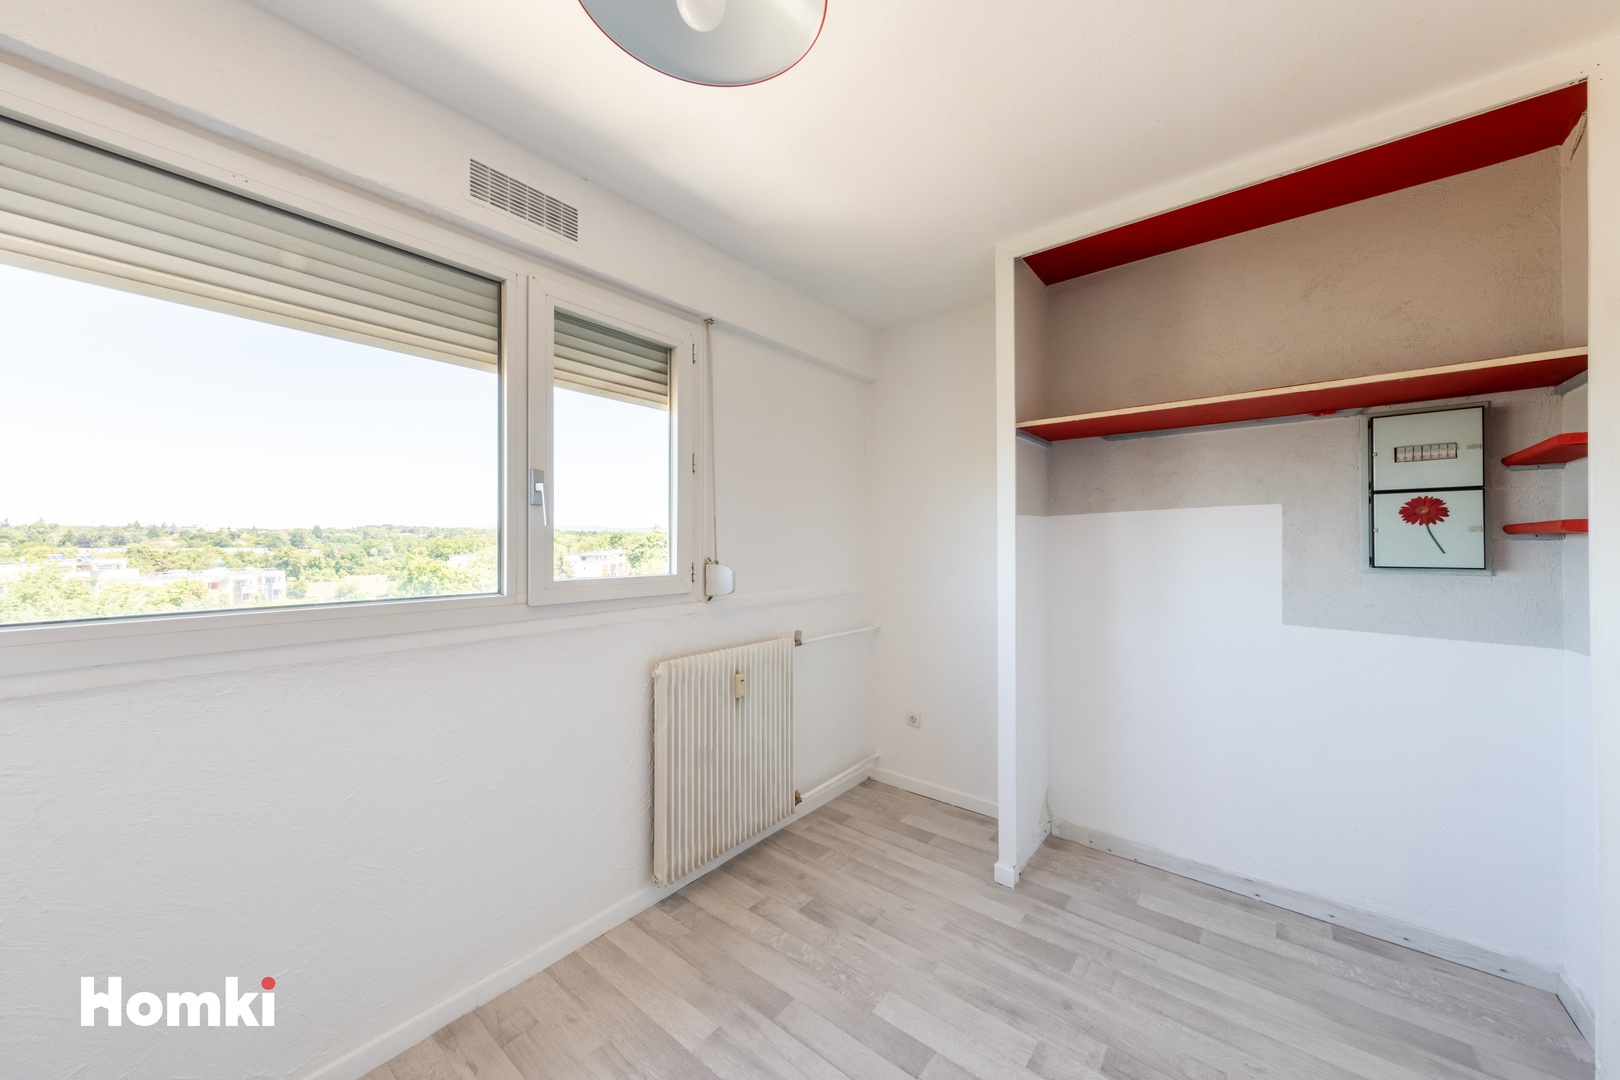 Homki - Vente Appartement  de 45.0 m² à Bourg-en-Bresse 01000